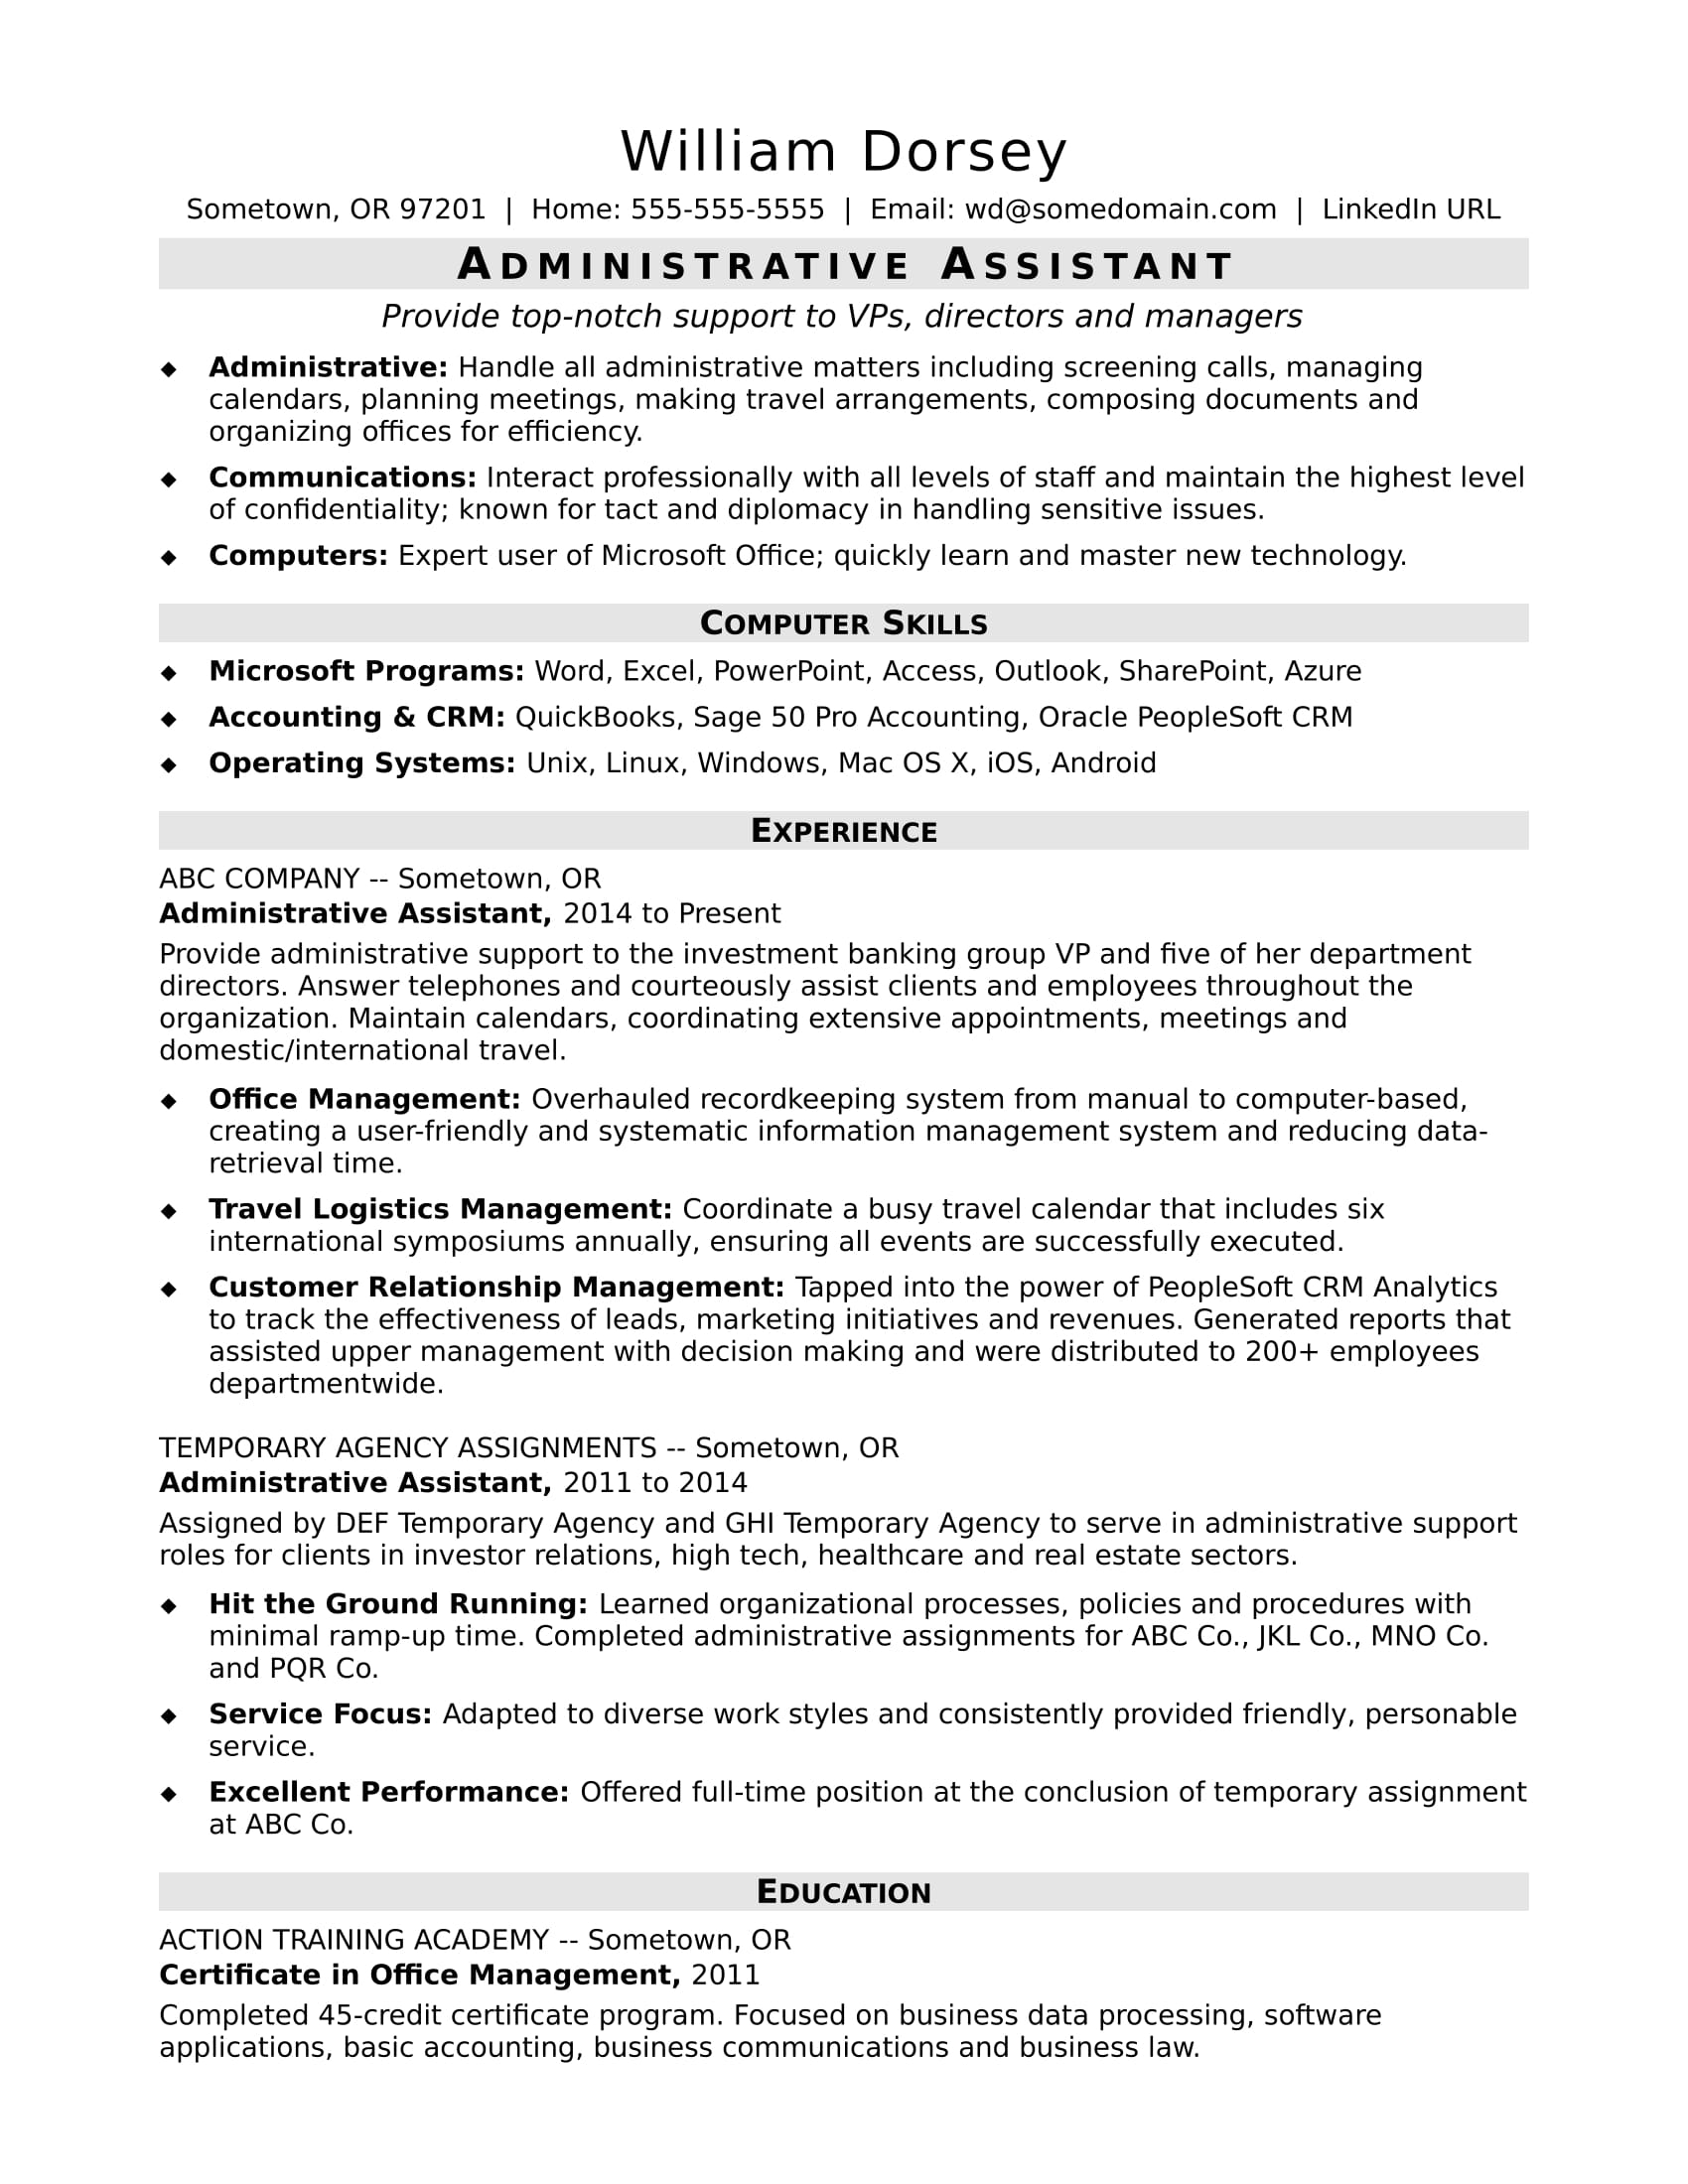 Midlevel Administrative Assistant Resume Sample | Monster.com